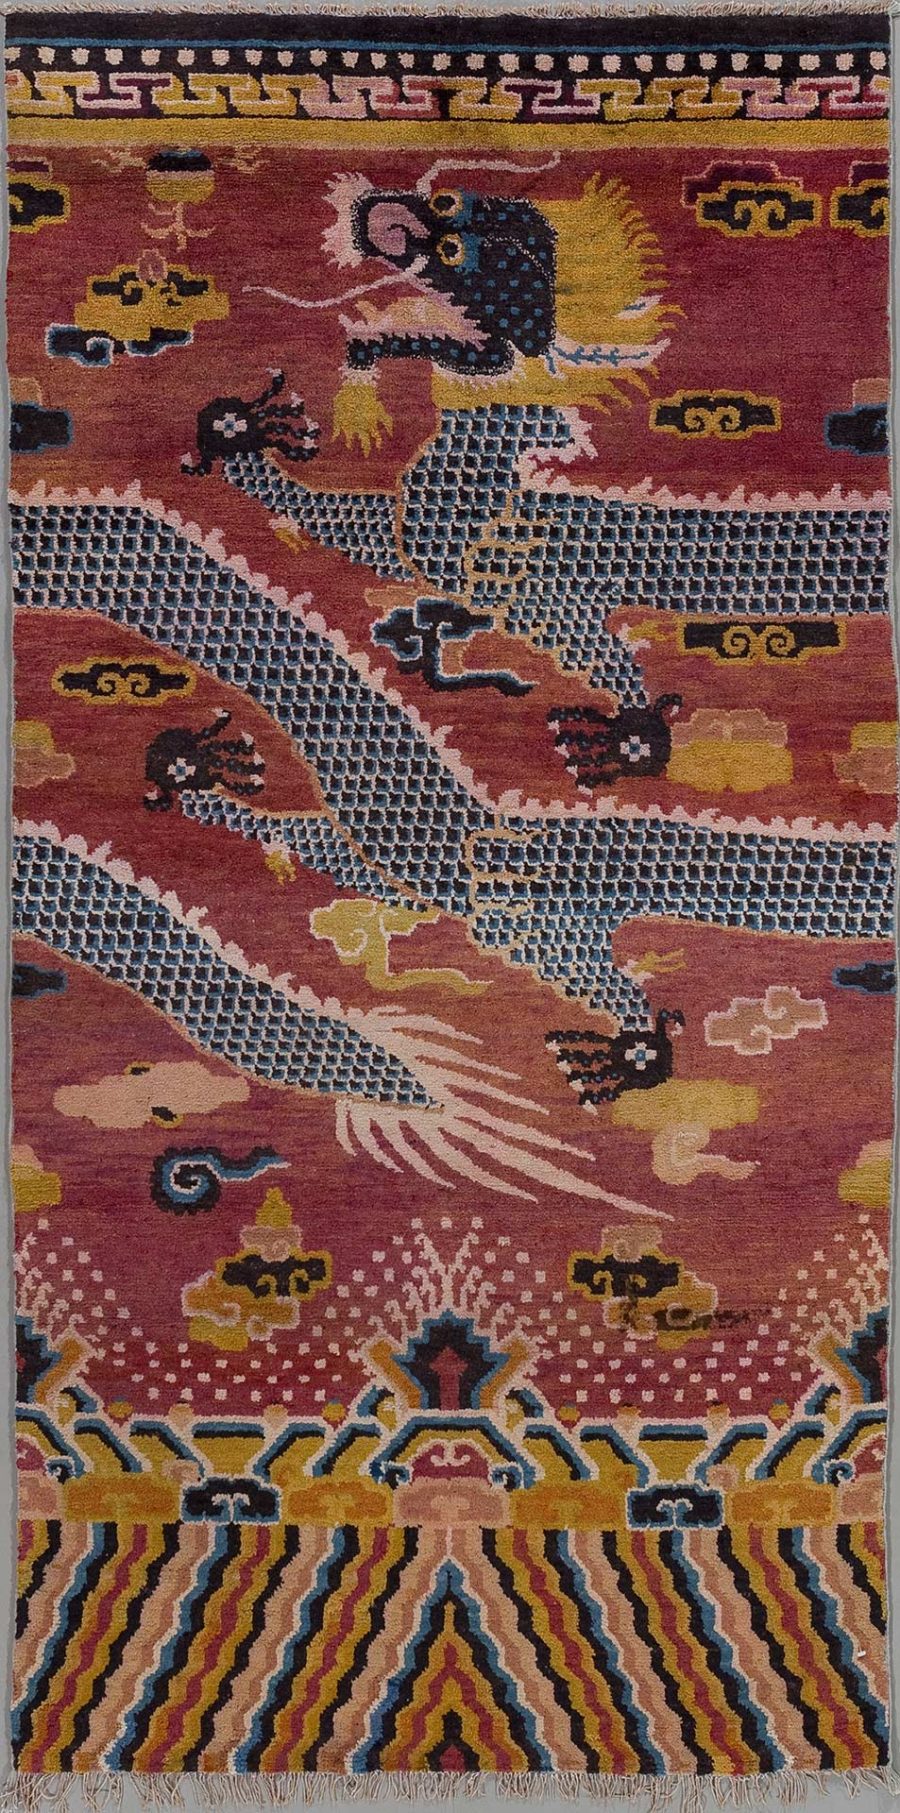 Alt Text: Handgeknüpfter Teppich mit traditionellen Mustern und Figuren, darunter ein zentrales Motiv, das an einen Drachen erinnert, auf einem bordeauxroten Hintergrund, umrahmt von geometrischen und abstrakten Formen in einer Vielzahl von Farben wie Gold, Blau, Rosa und Beige.